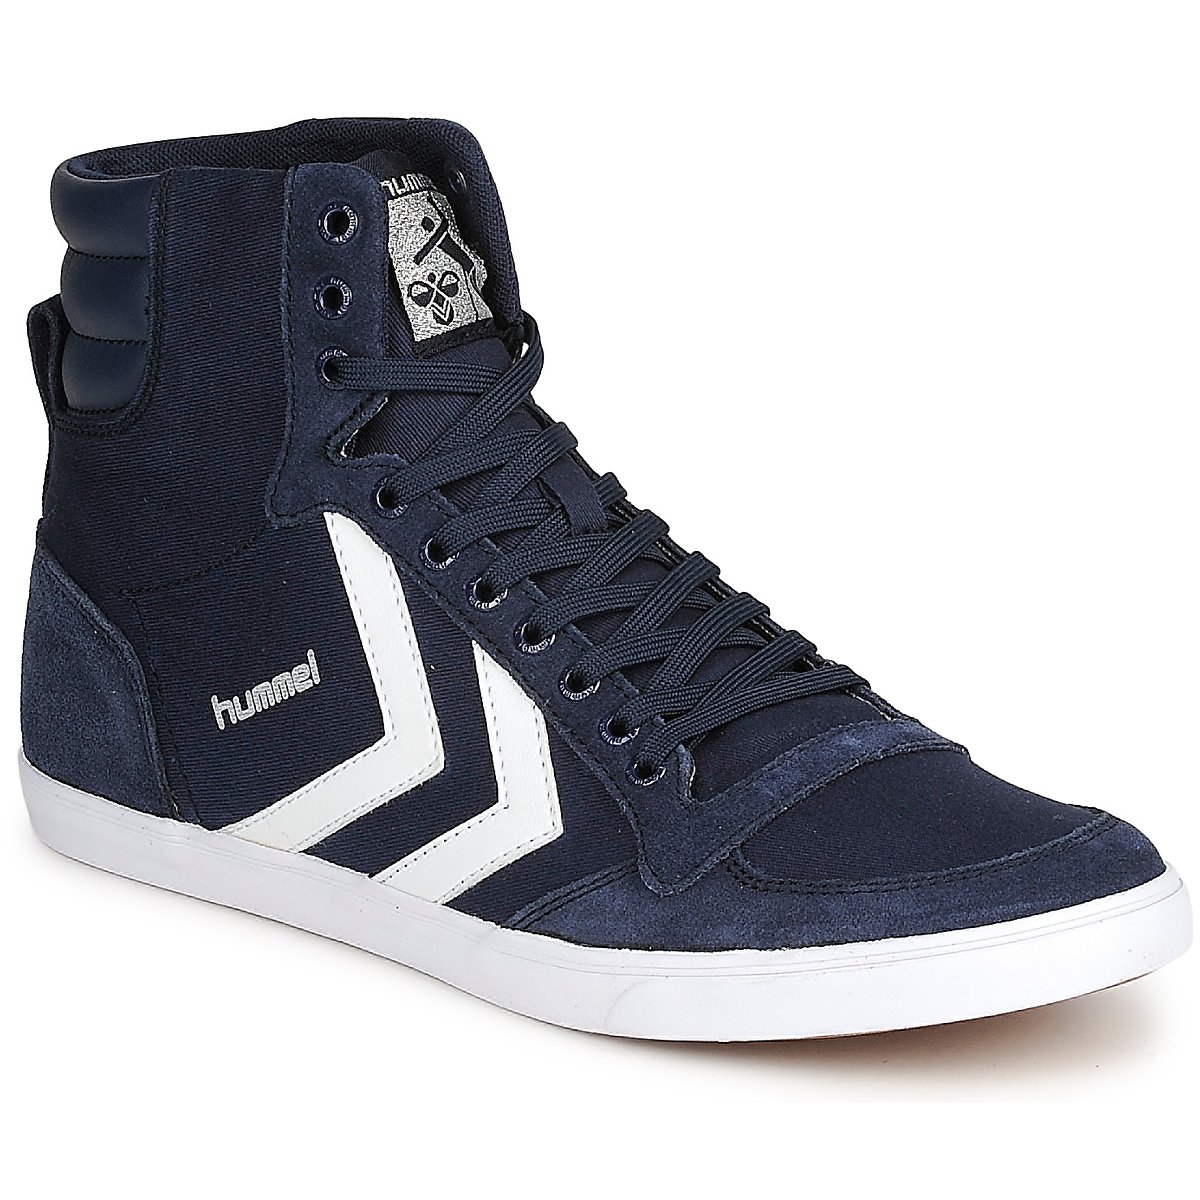 Hummel - Slimmer Stadil High - Sneakers maat 38, blauw